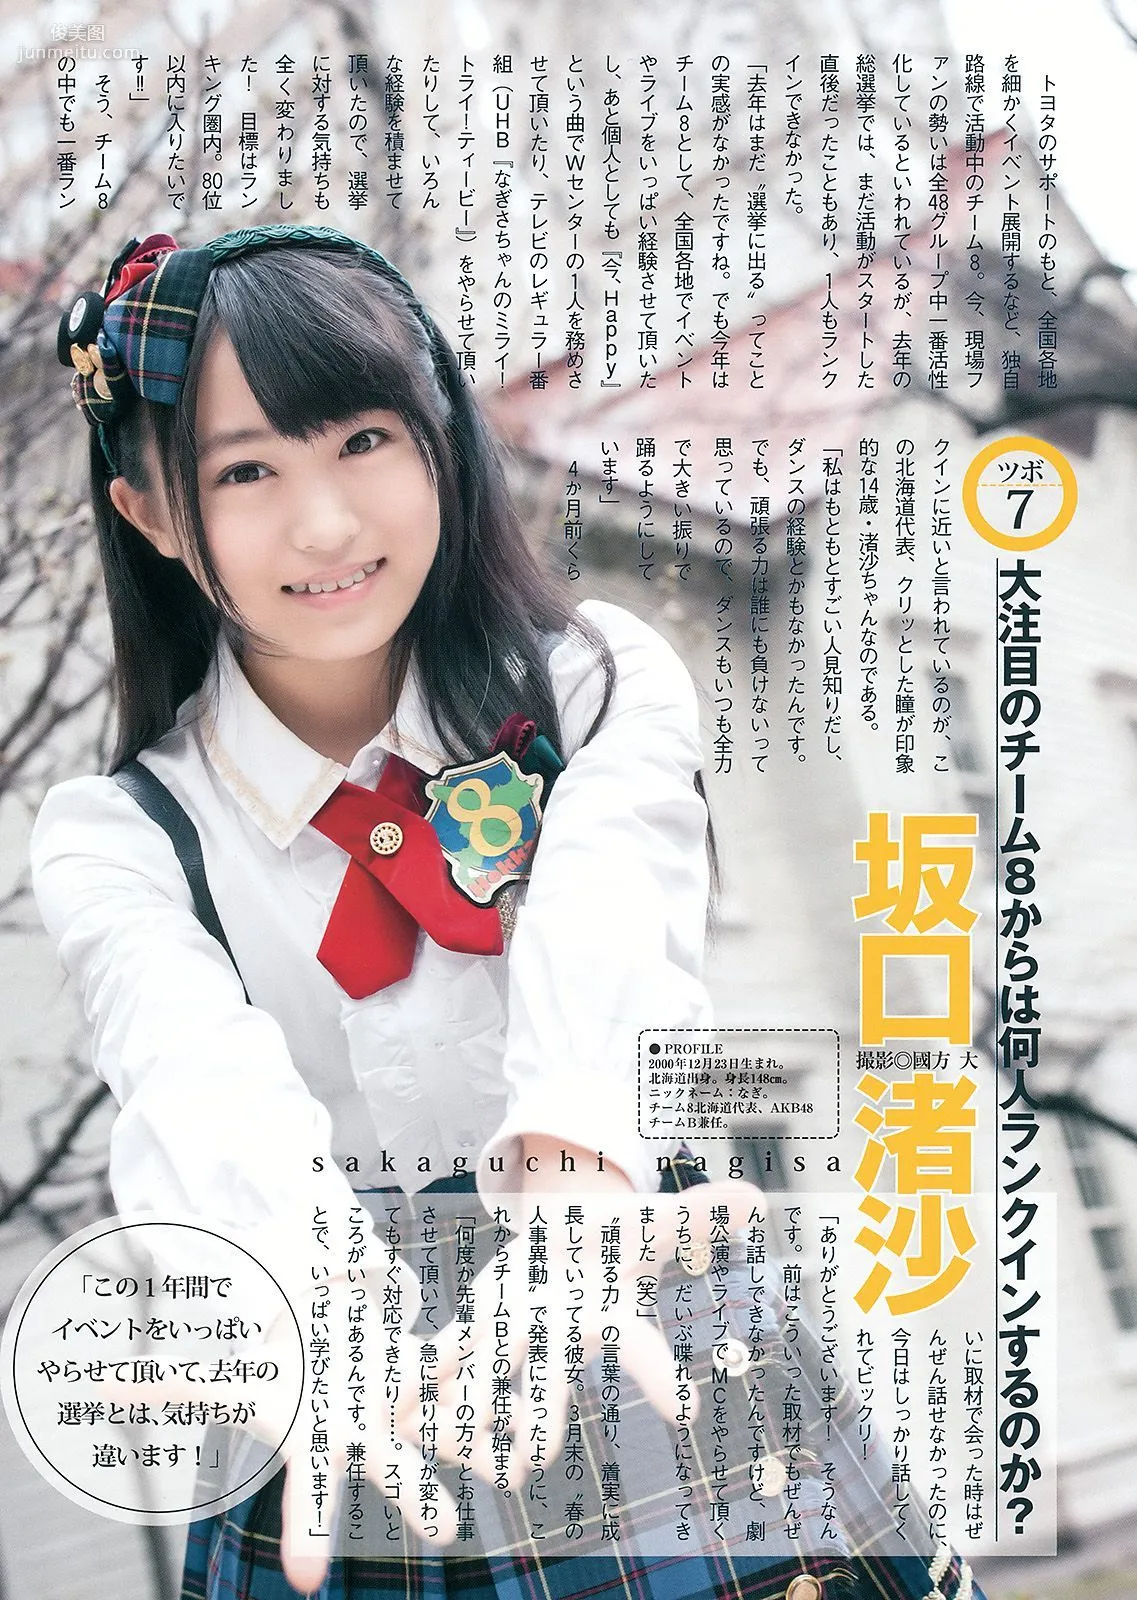 島崎遙香 川本紗矢 佐々木優佳里 [Weekly Young Jump] 2015年No.27 写真杂志27